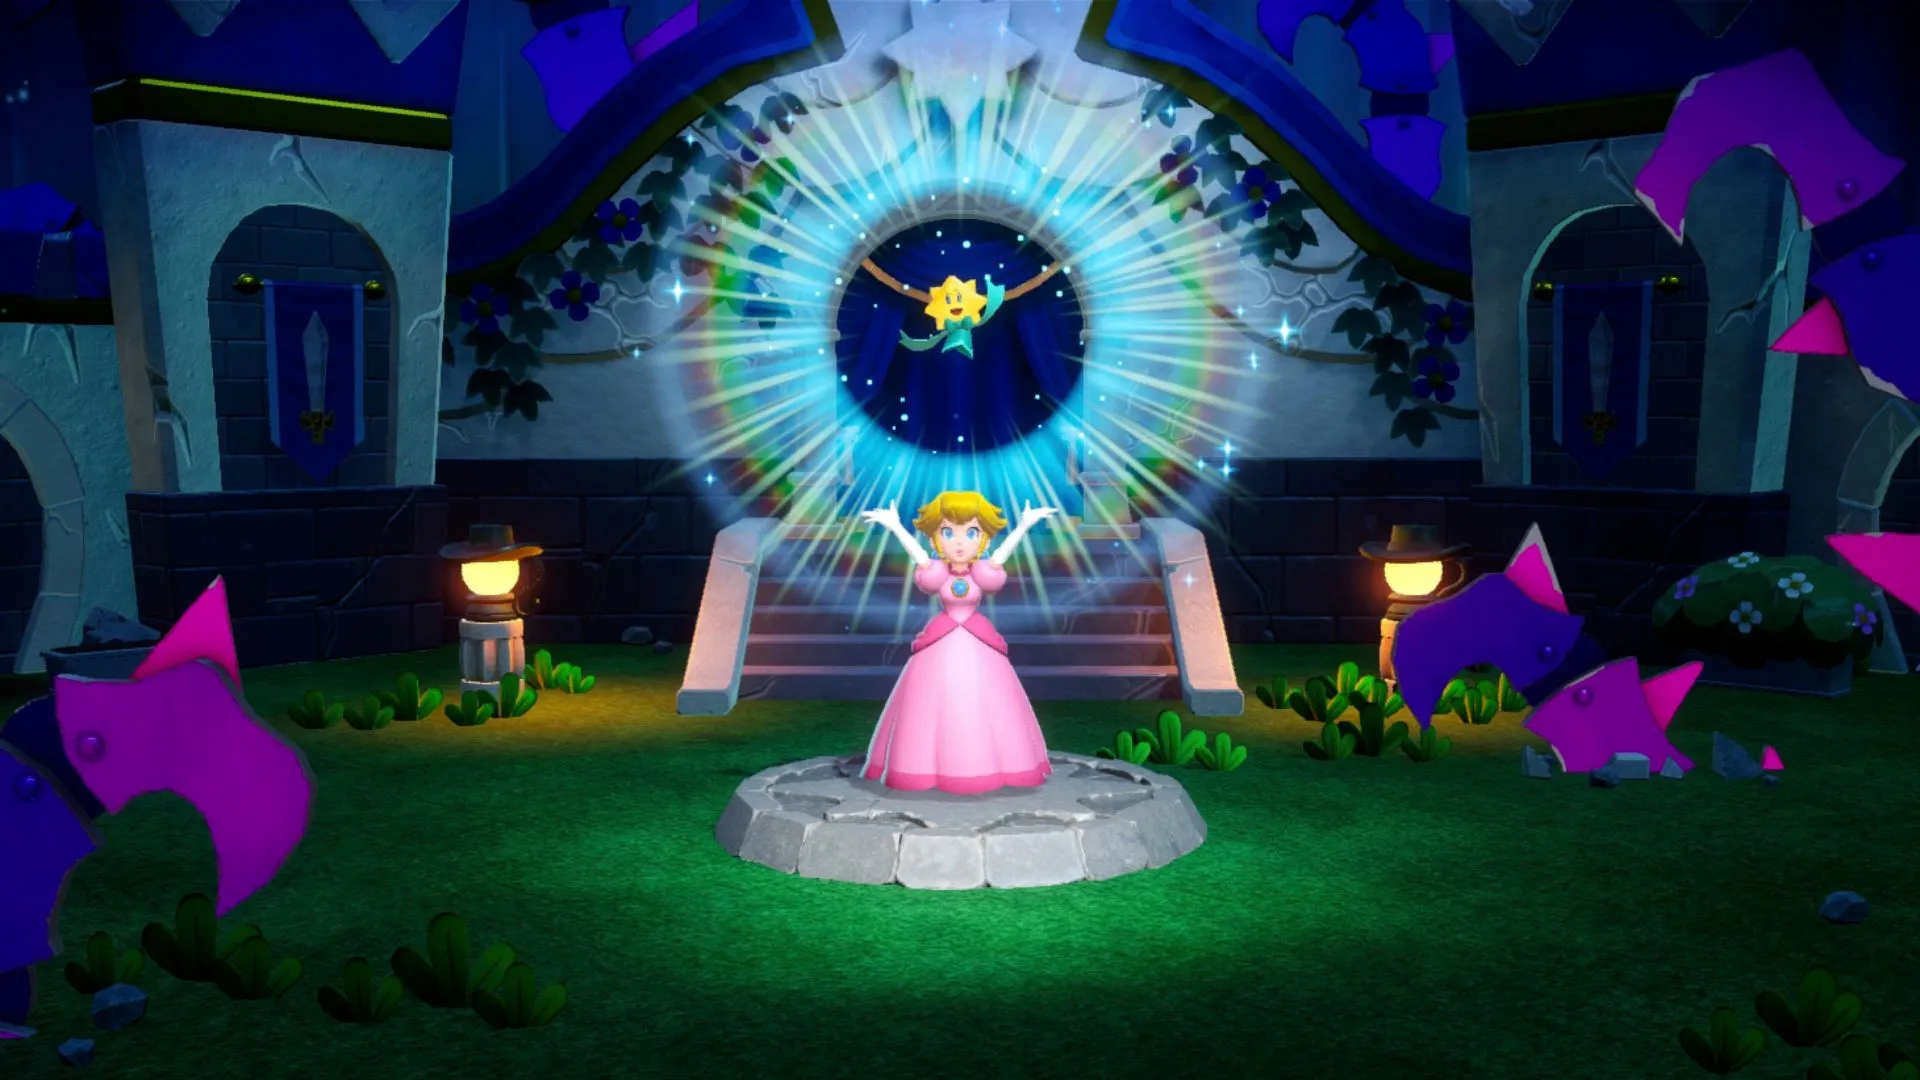 Nintendo Switch Princess Peach: Showtime! - 5